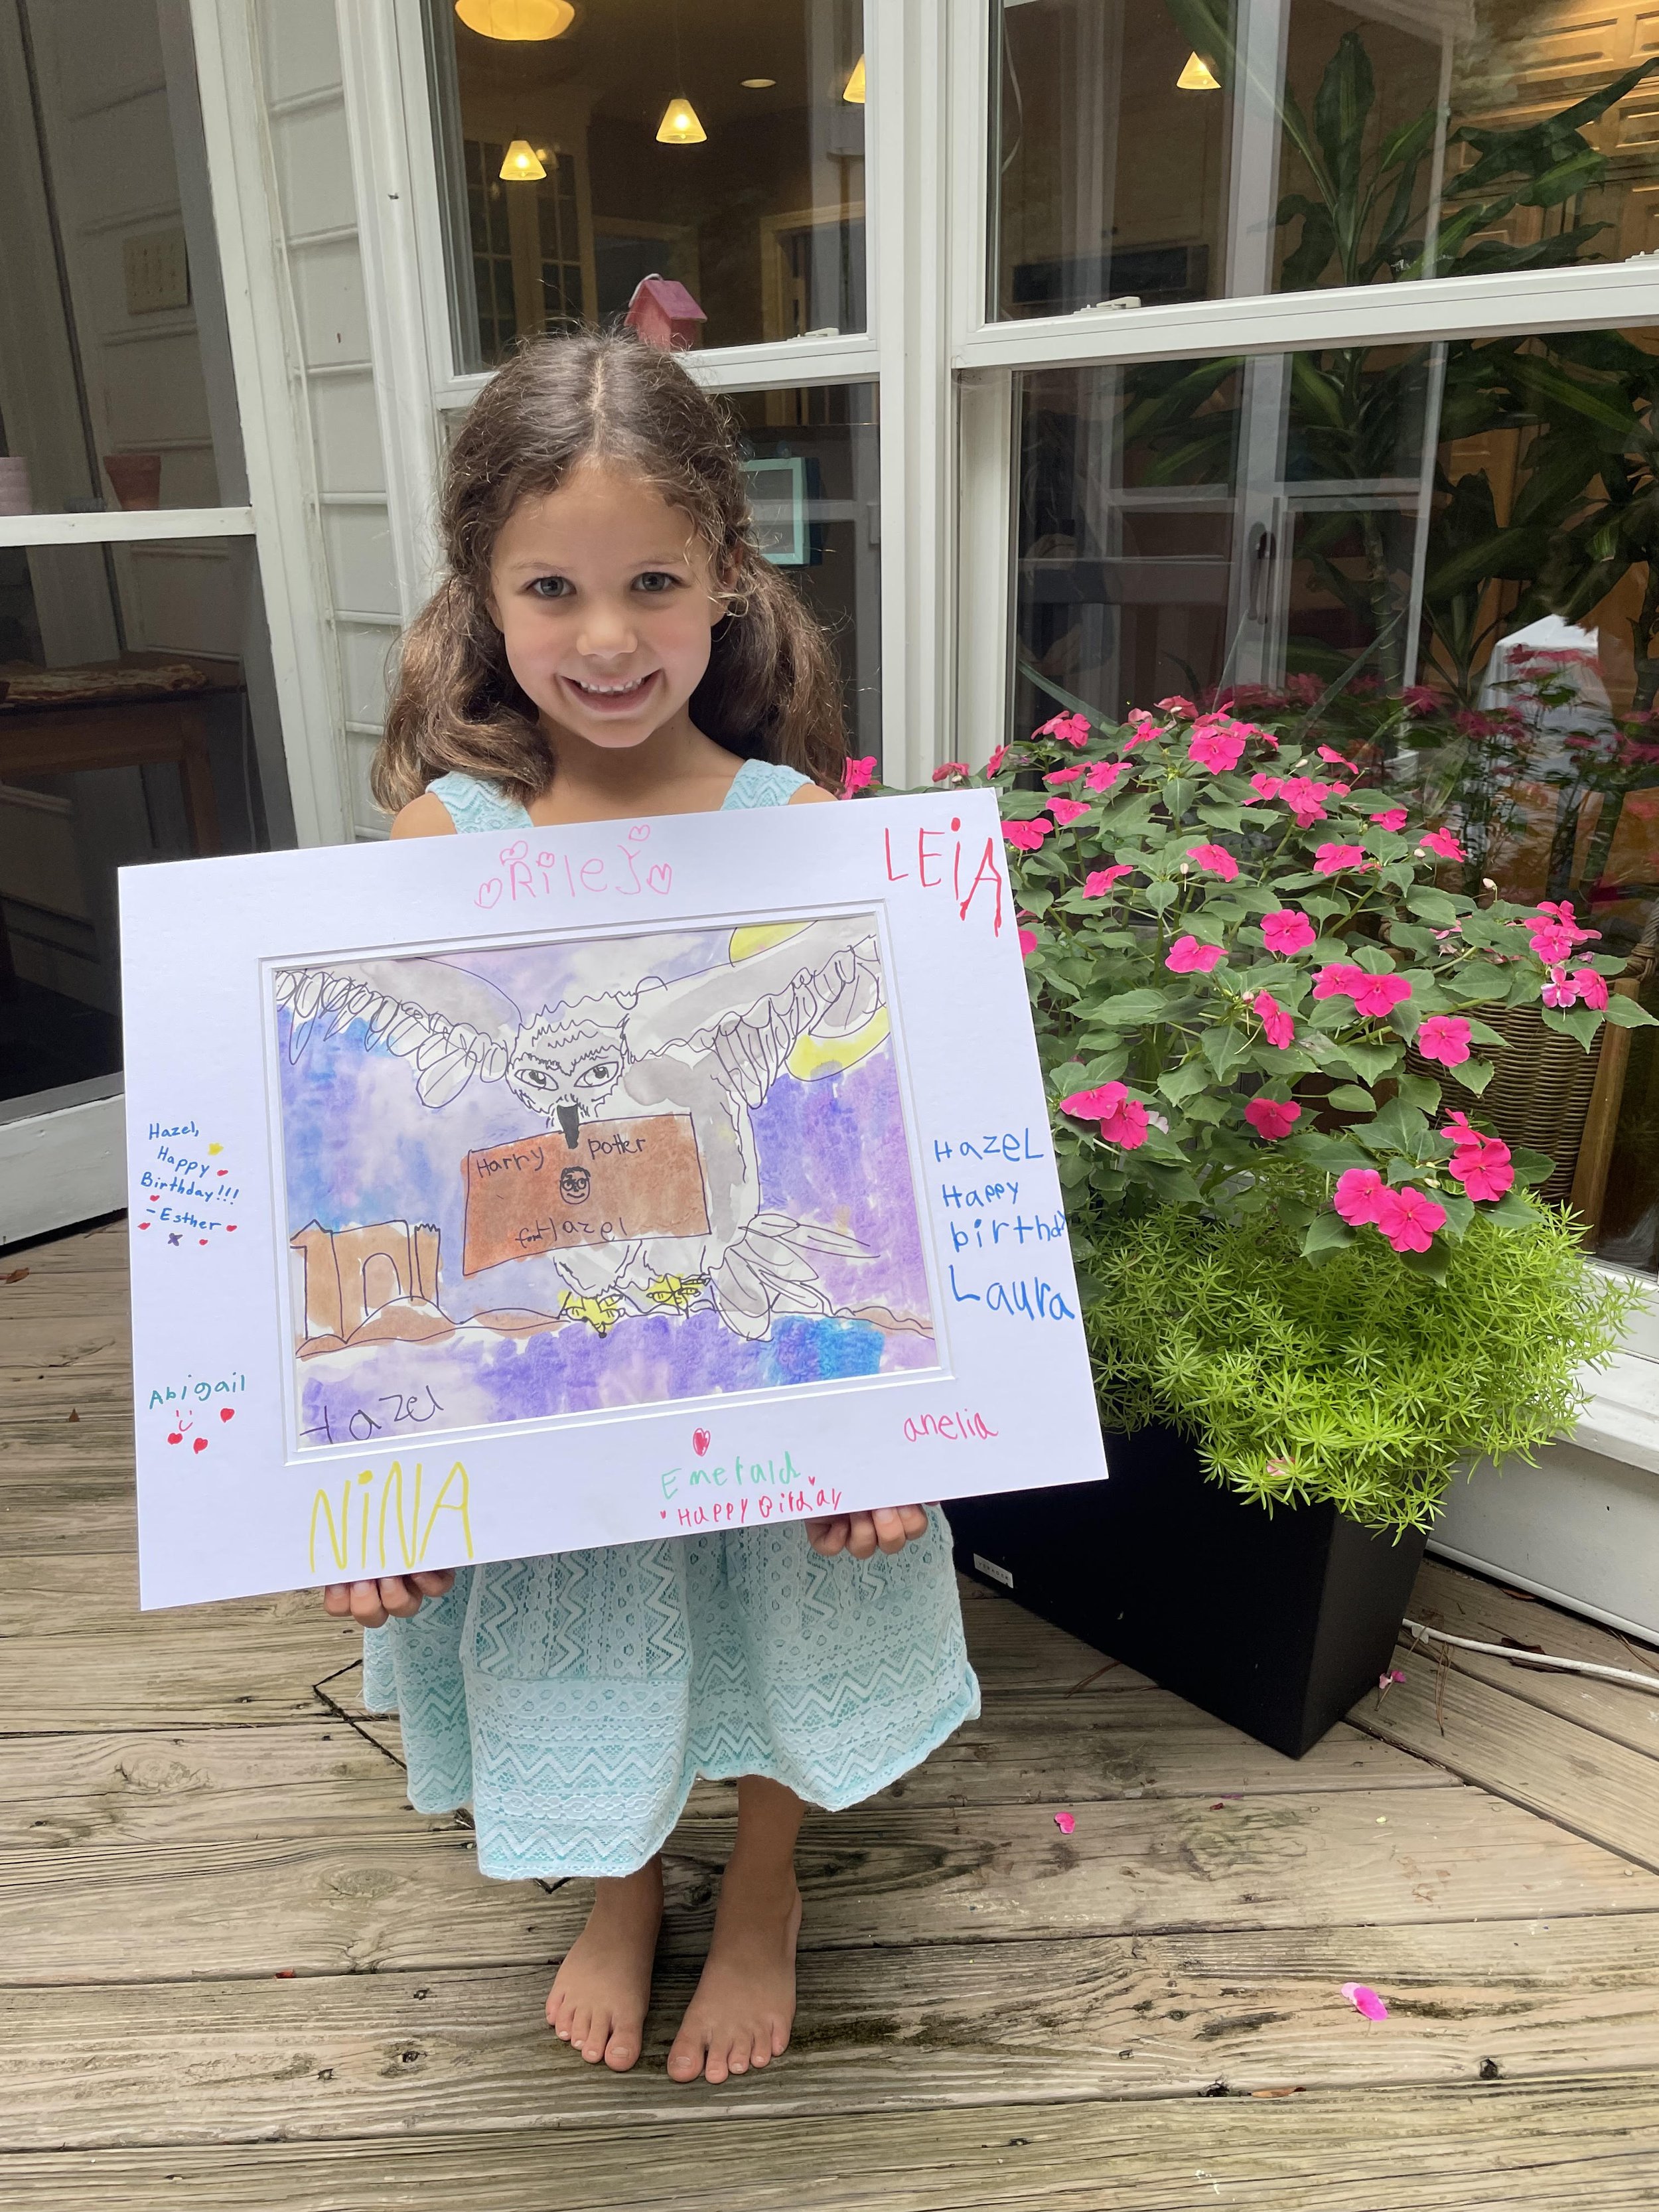 Toddler Art with Clara: A Child's First Art Materials